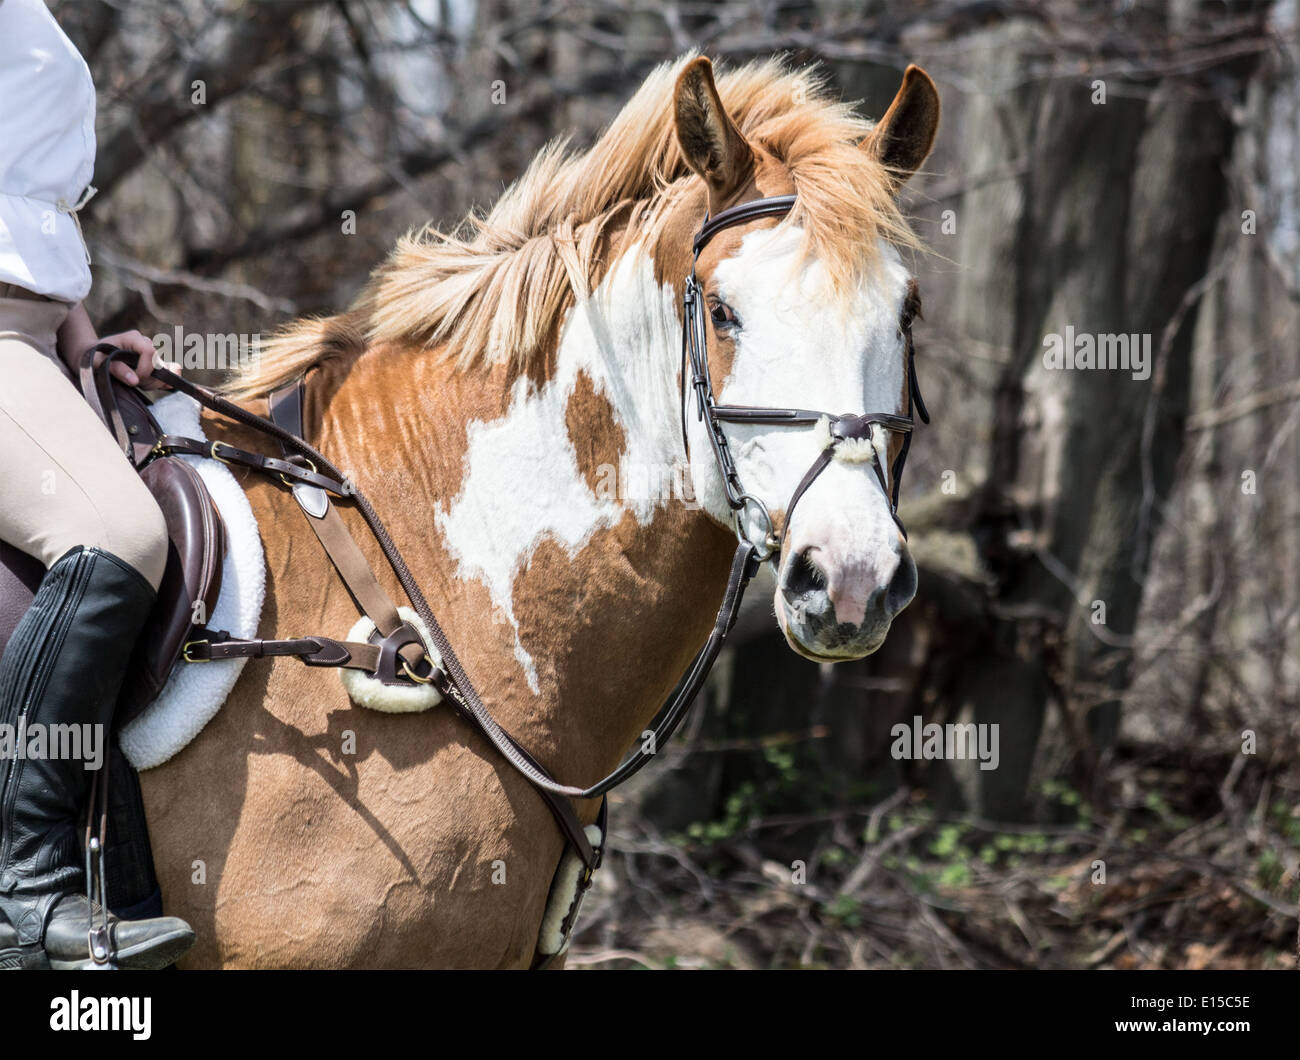 Malen Sie Pferd im englischen Reitausrüstung und Kleidung, Blick in die Kamera. Stockfoto